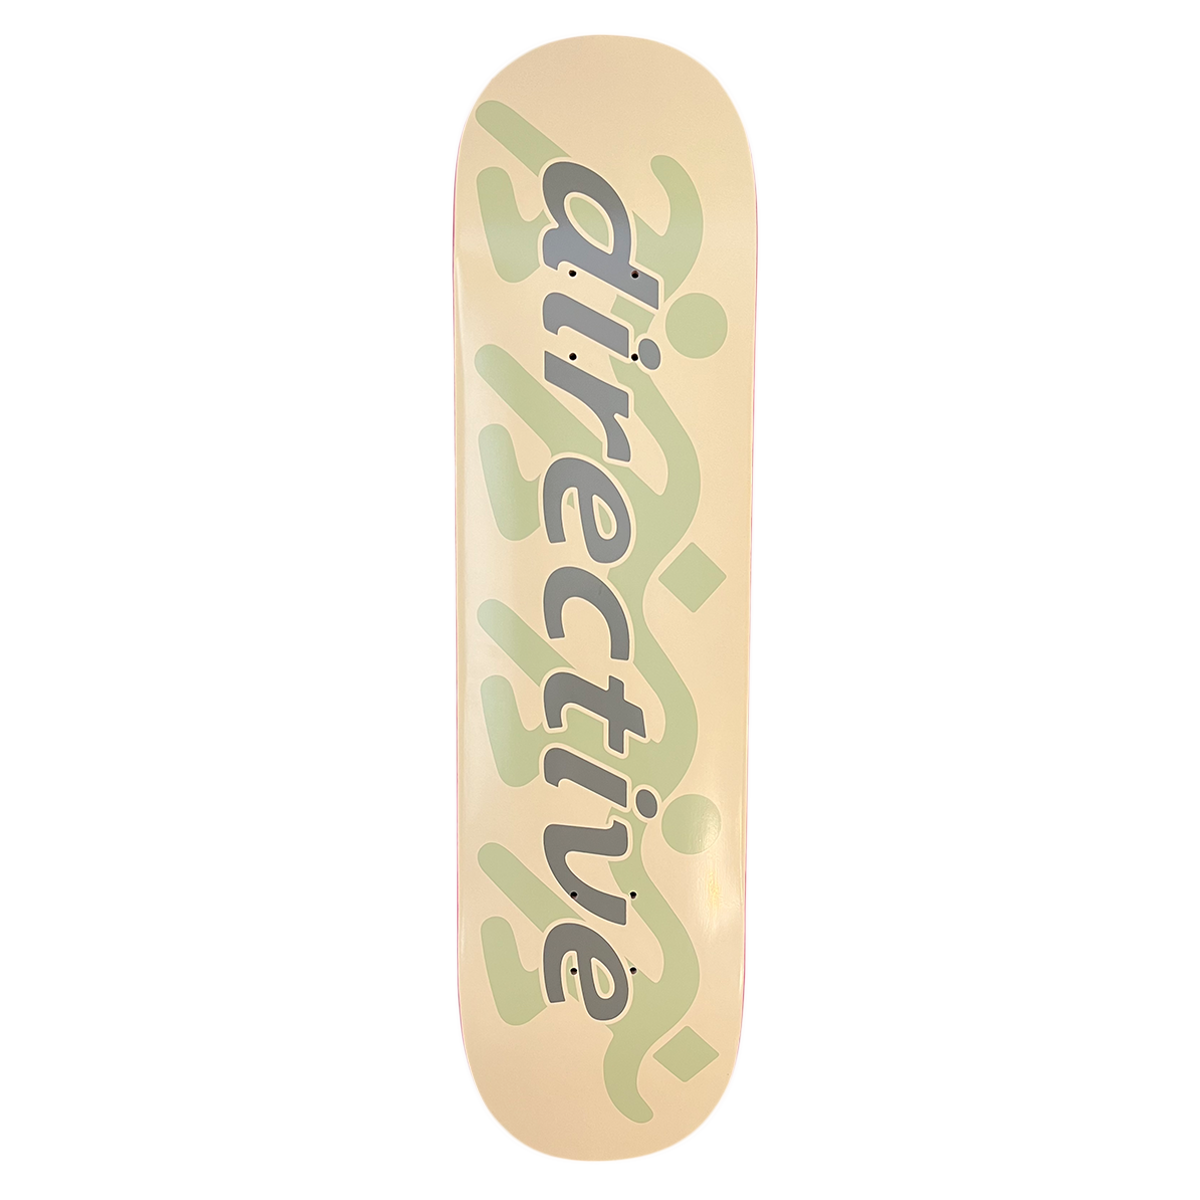 Directive Runner Skate Deck - Cream